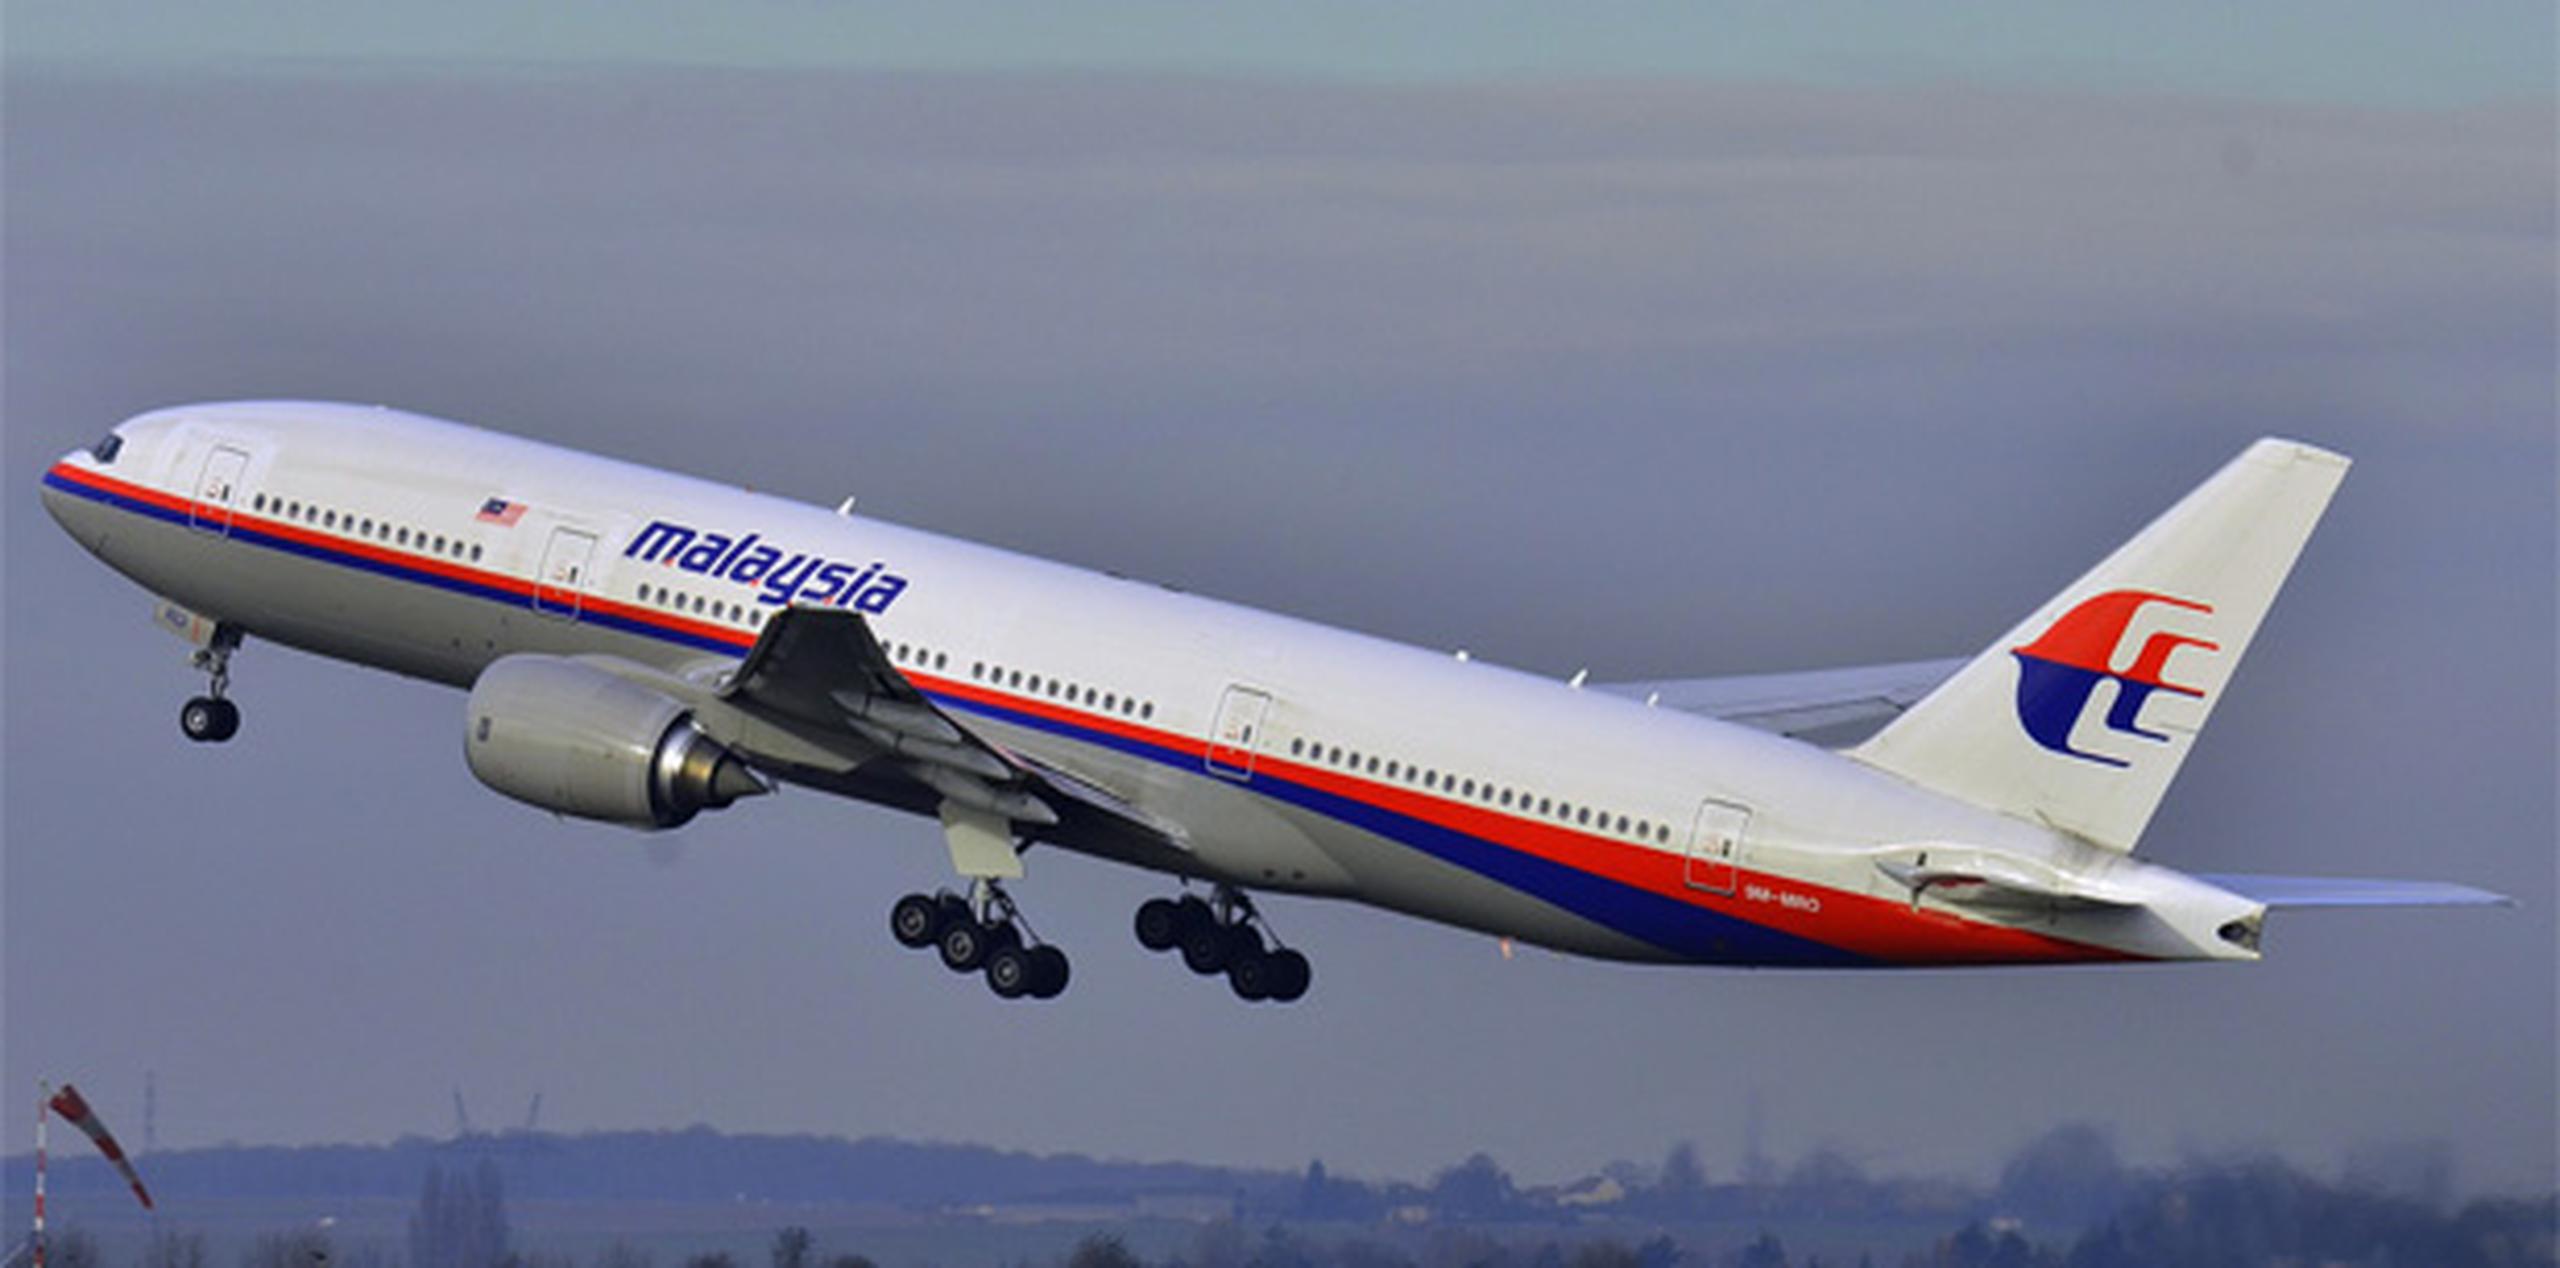 El avión desapareció el 8 de marzo de 2014 con 239 personas a bordo cuando cubría la ruta entre Kuala Lumpur y Beijing.